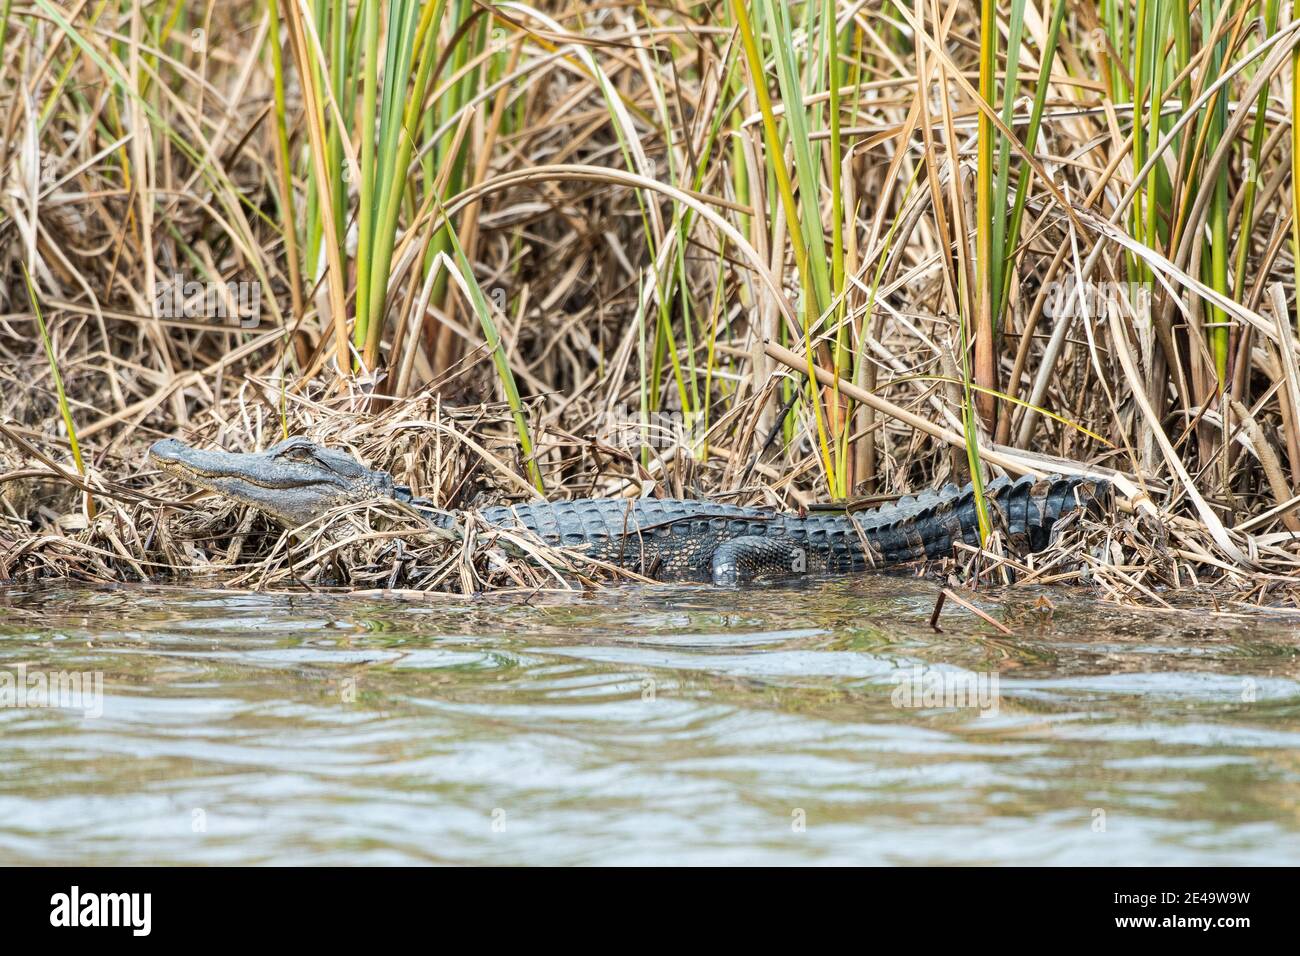 Kleiner amerikanischer Alligator, der am Rand des Wassers liegt Stockfoto